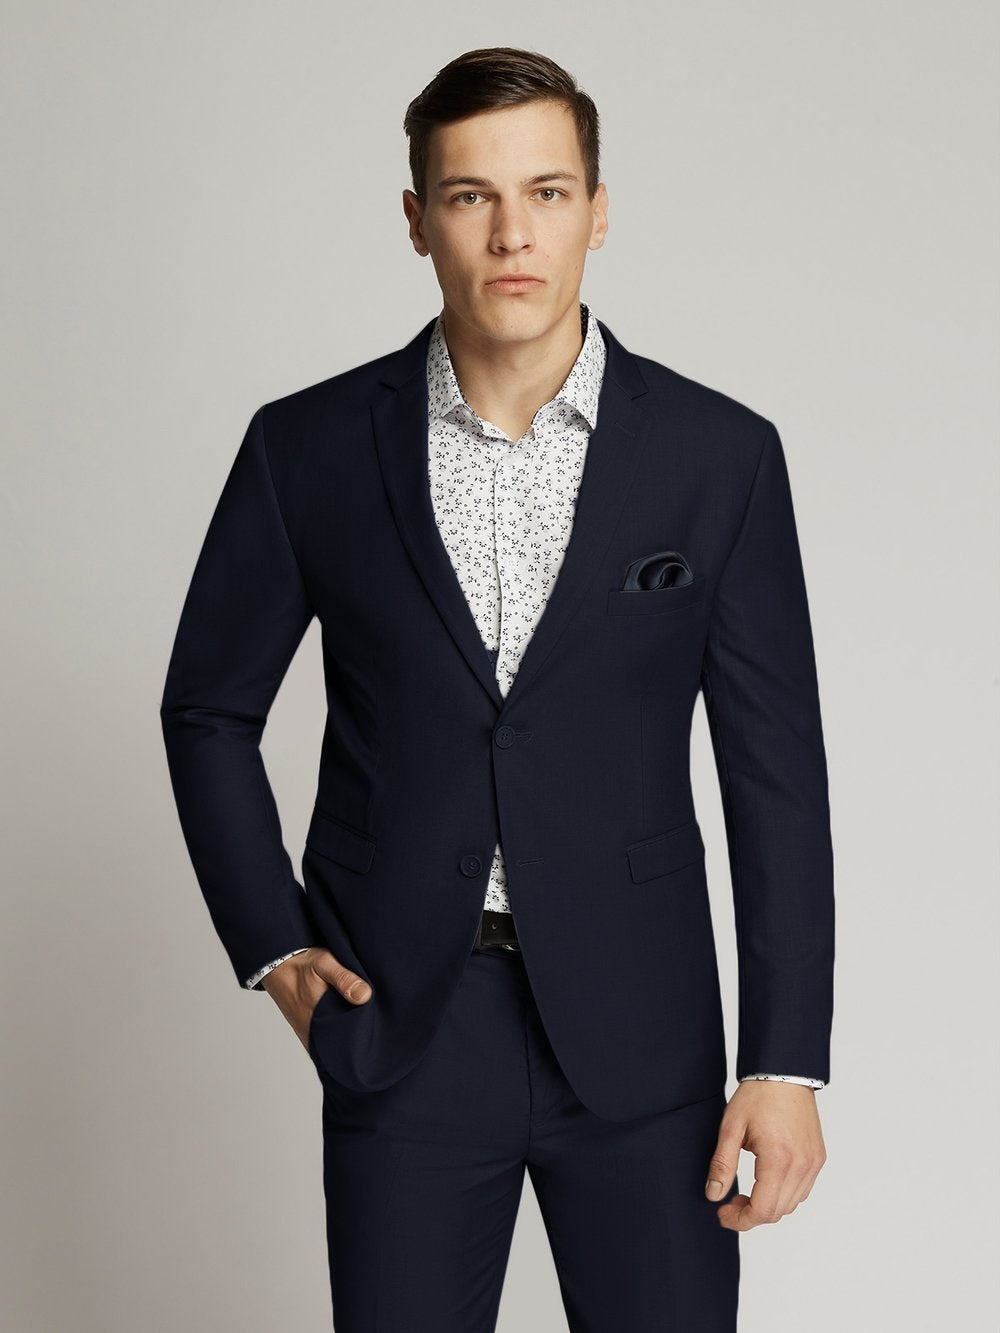 Suits & Tuxedos - Classique Formal Wear & Hire